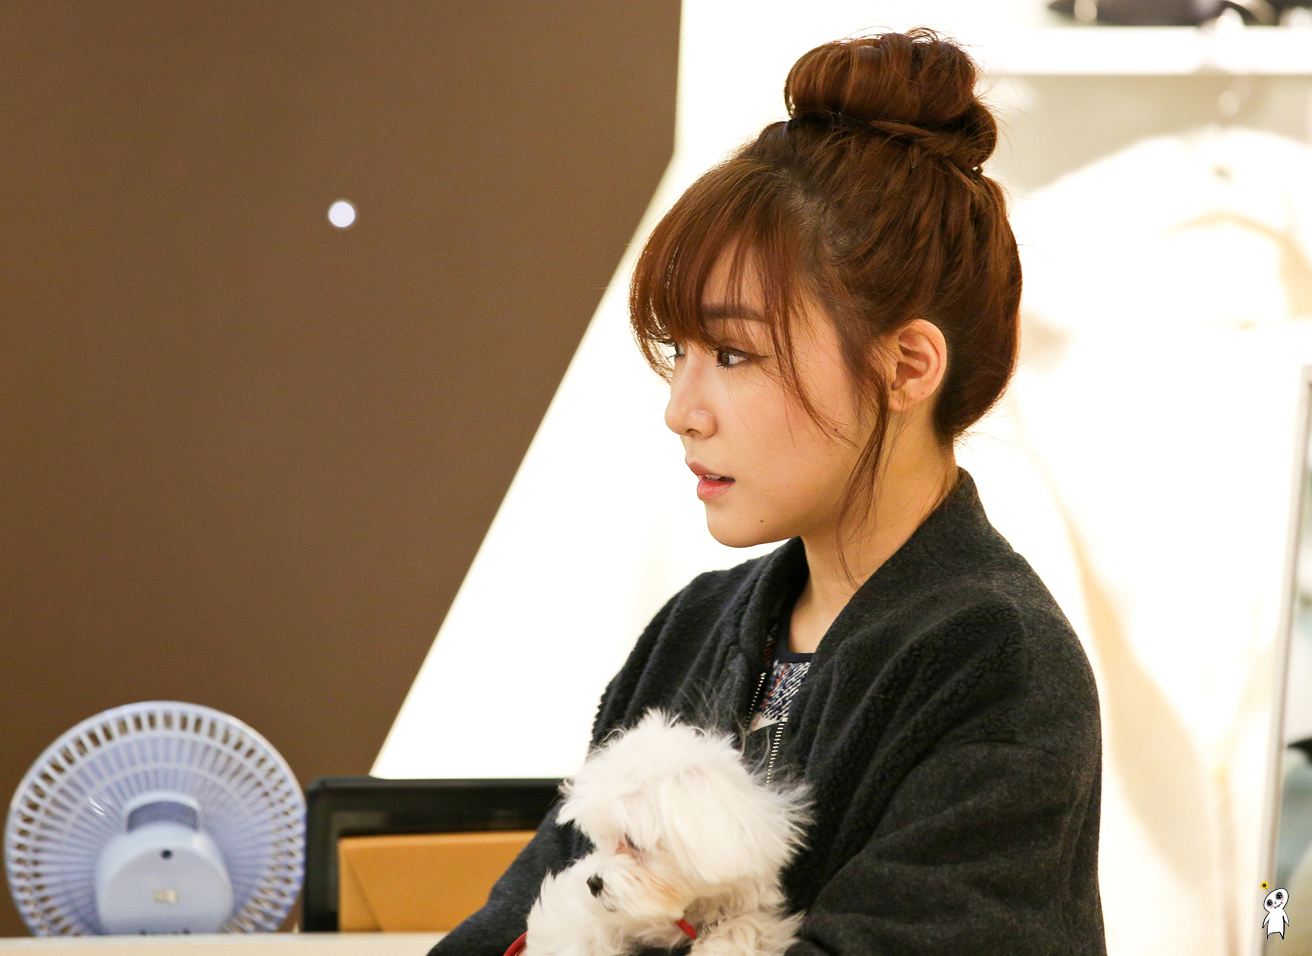 [PIC][28-11-2013]Tiffany ghé thăm cửa hàng "QUA" ở Hyundai Department Store vào trưa nay - Page 3 2623063F52980CB530F402